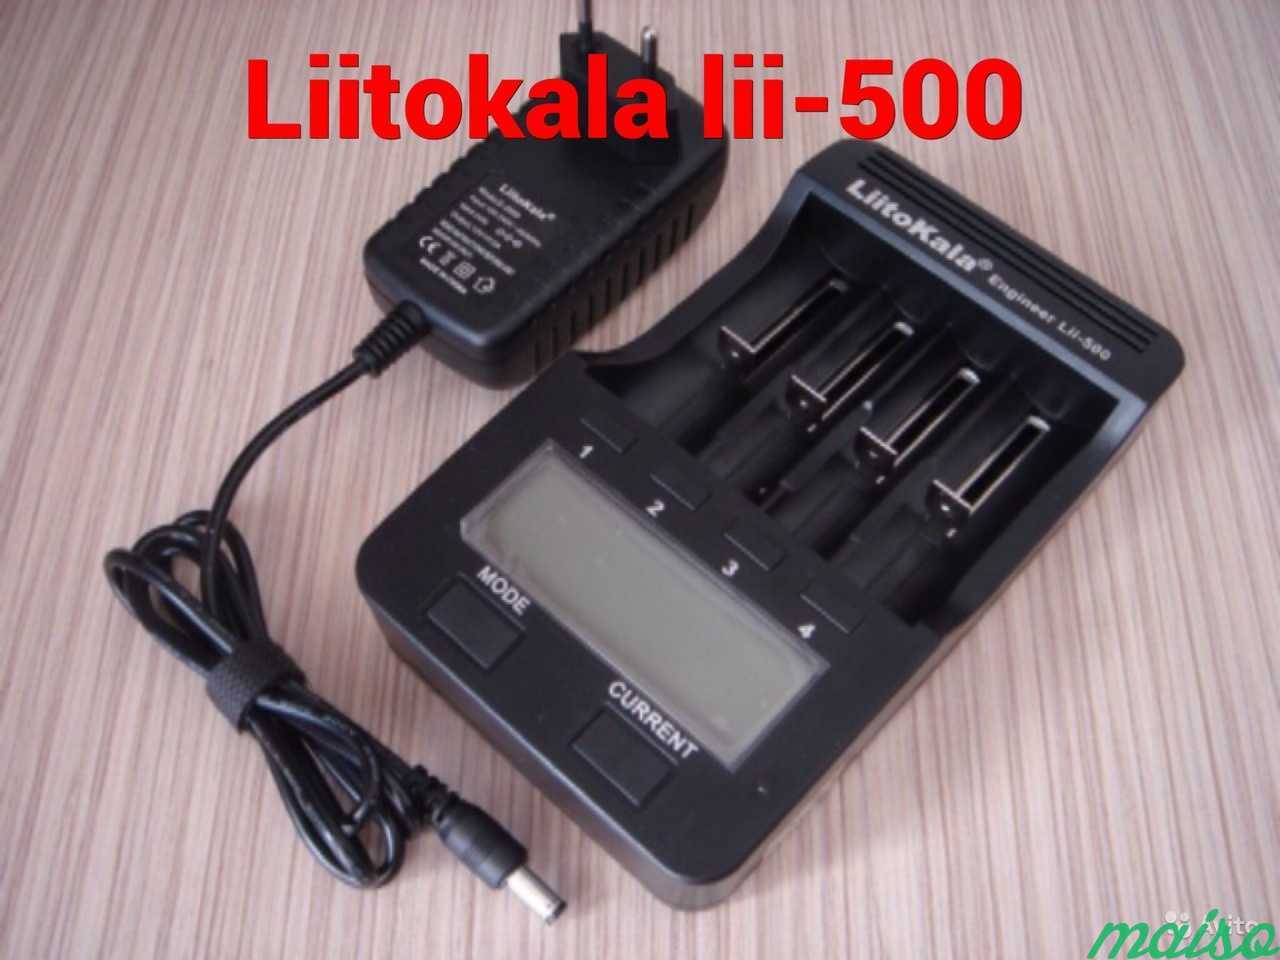 Новое зарядное устройство Liitokala Lii-500 в Санкт-Петербурге. Фото 1